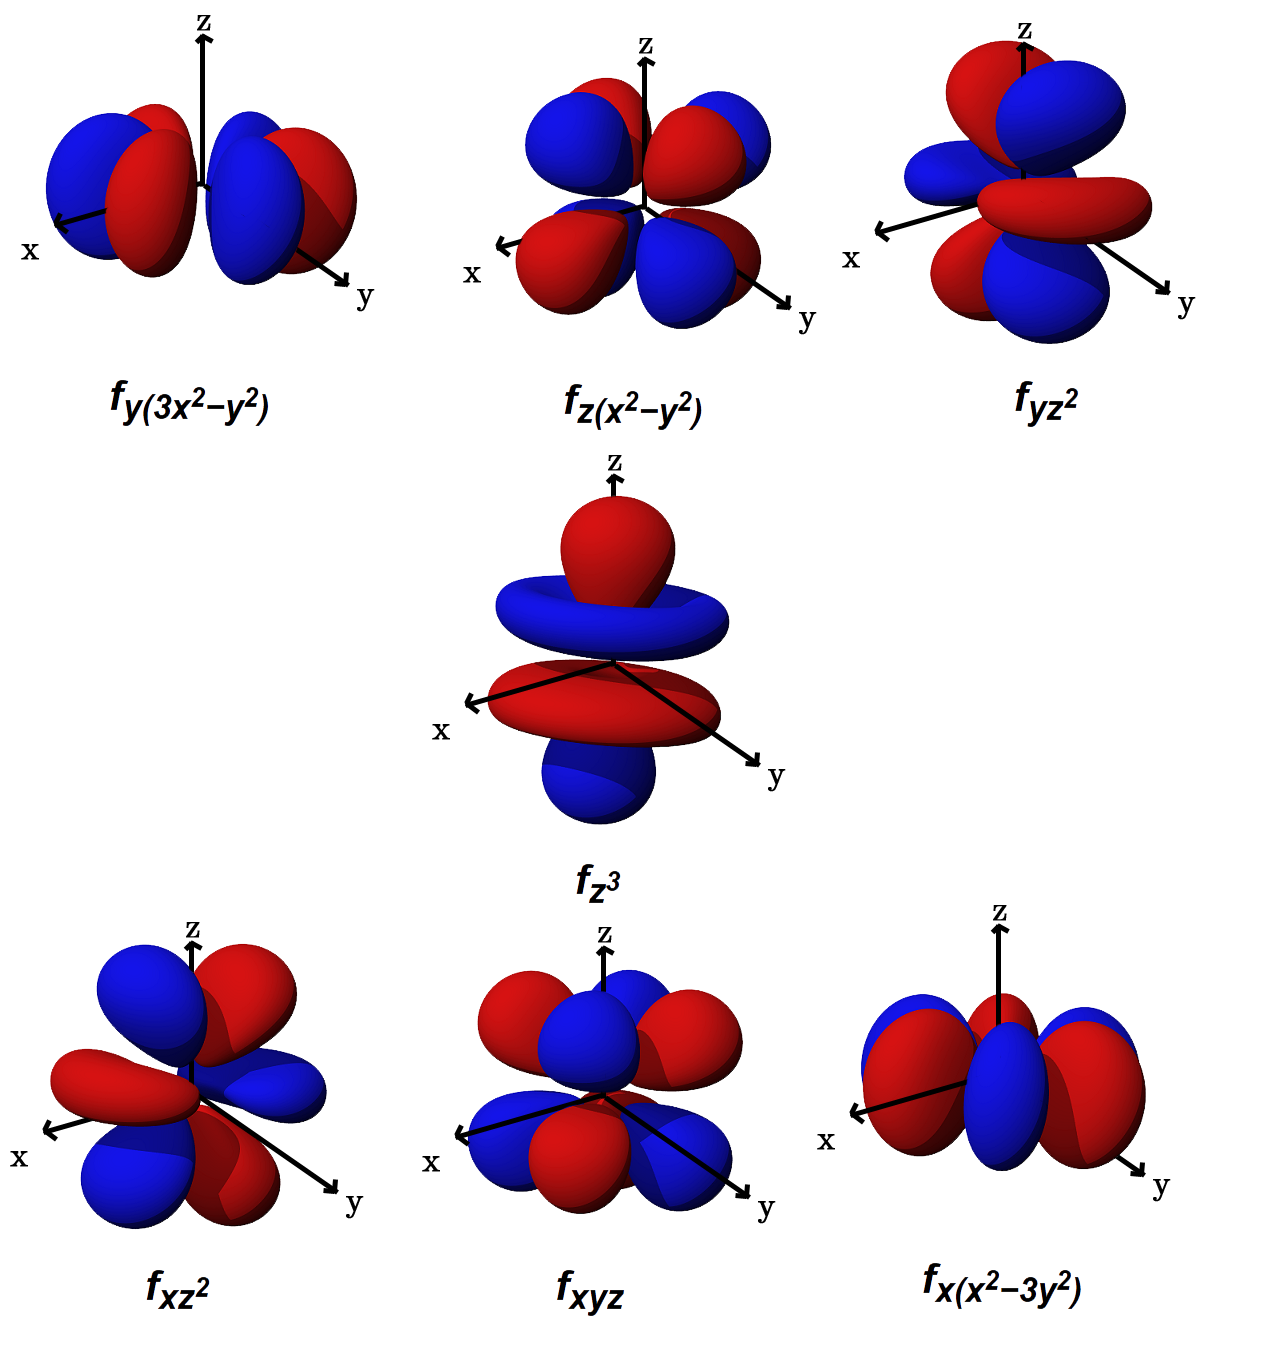 no molecular orbital diagram